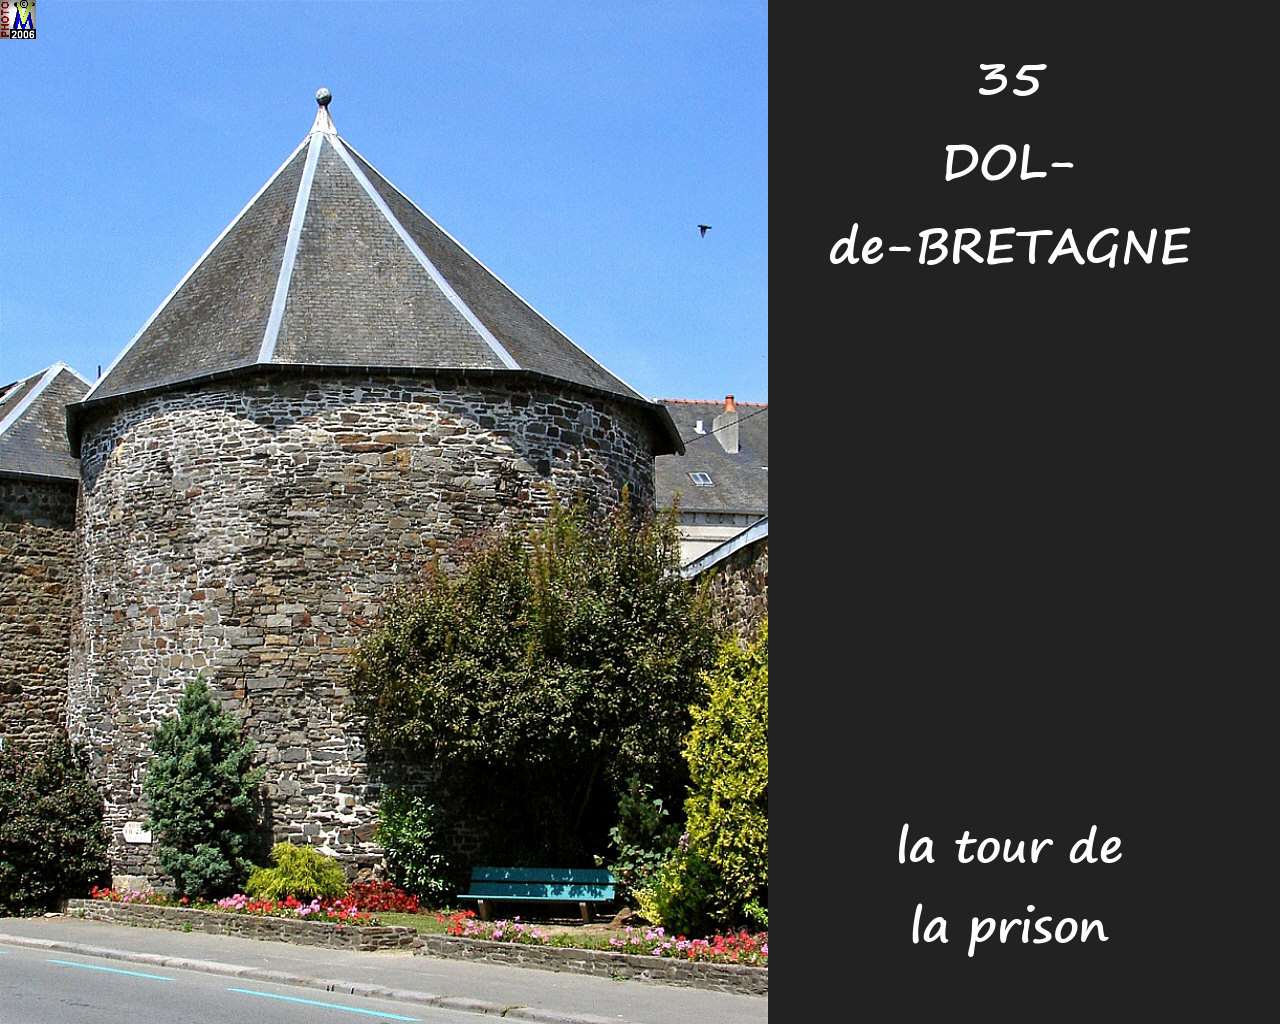 35DOL-BRETAGNE_prison_100.jpg